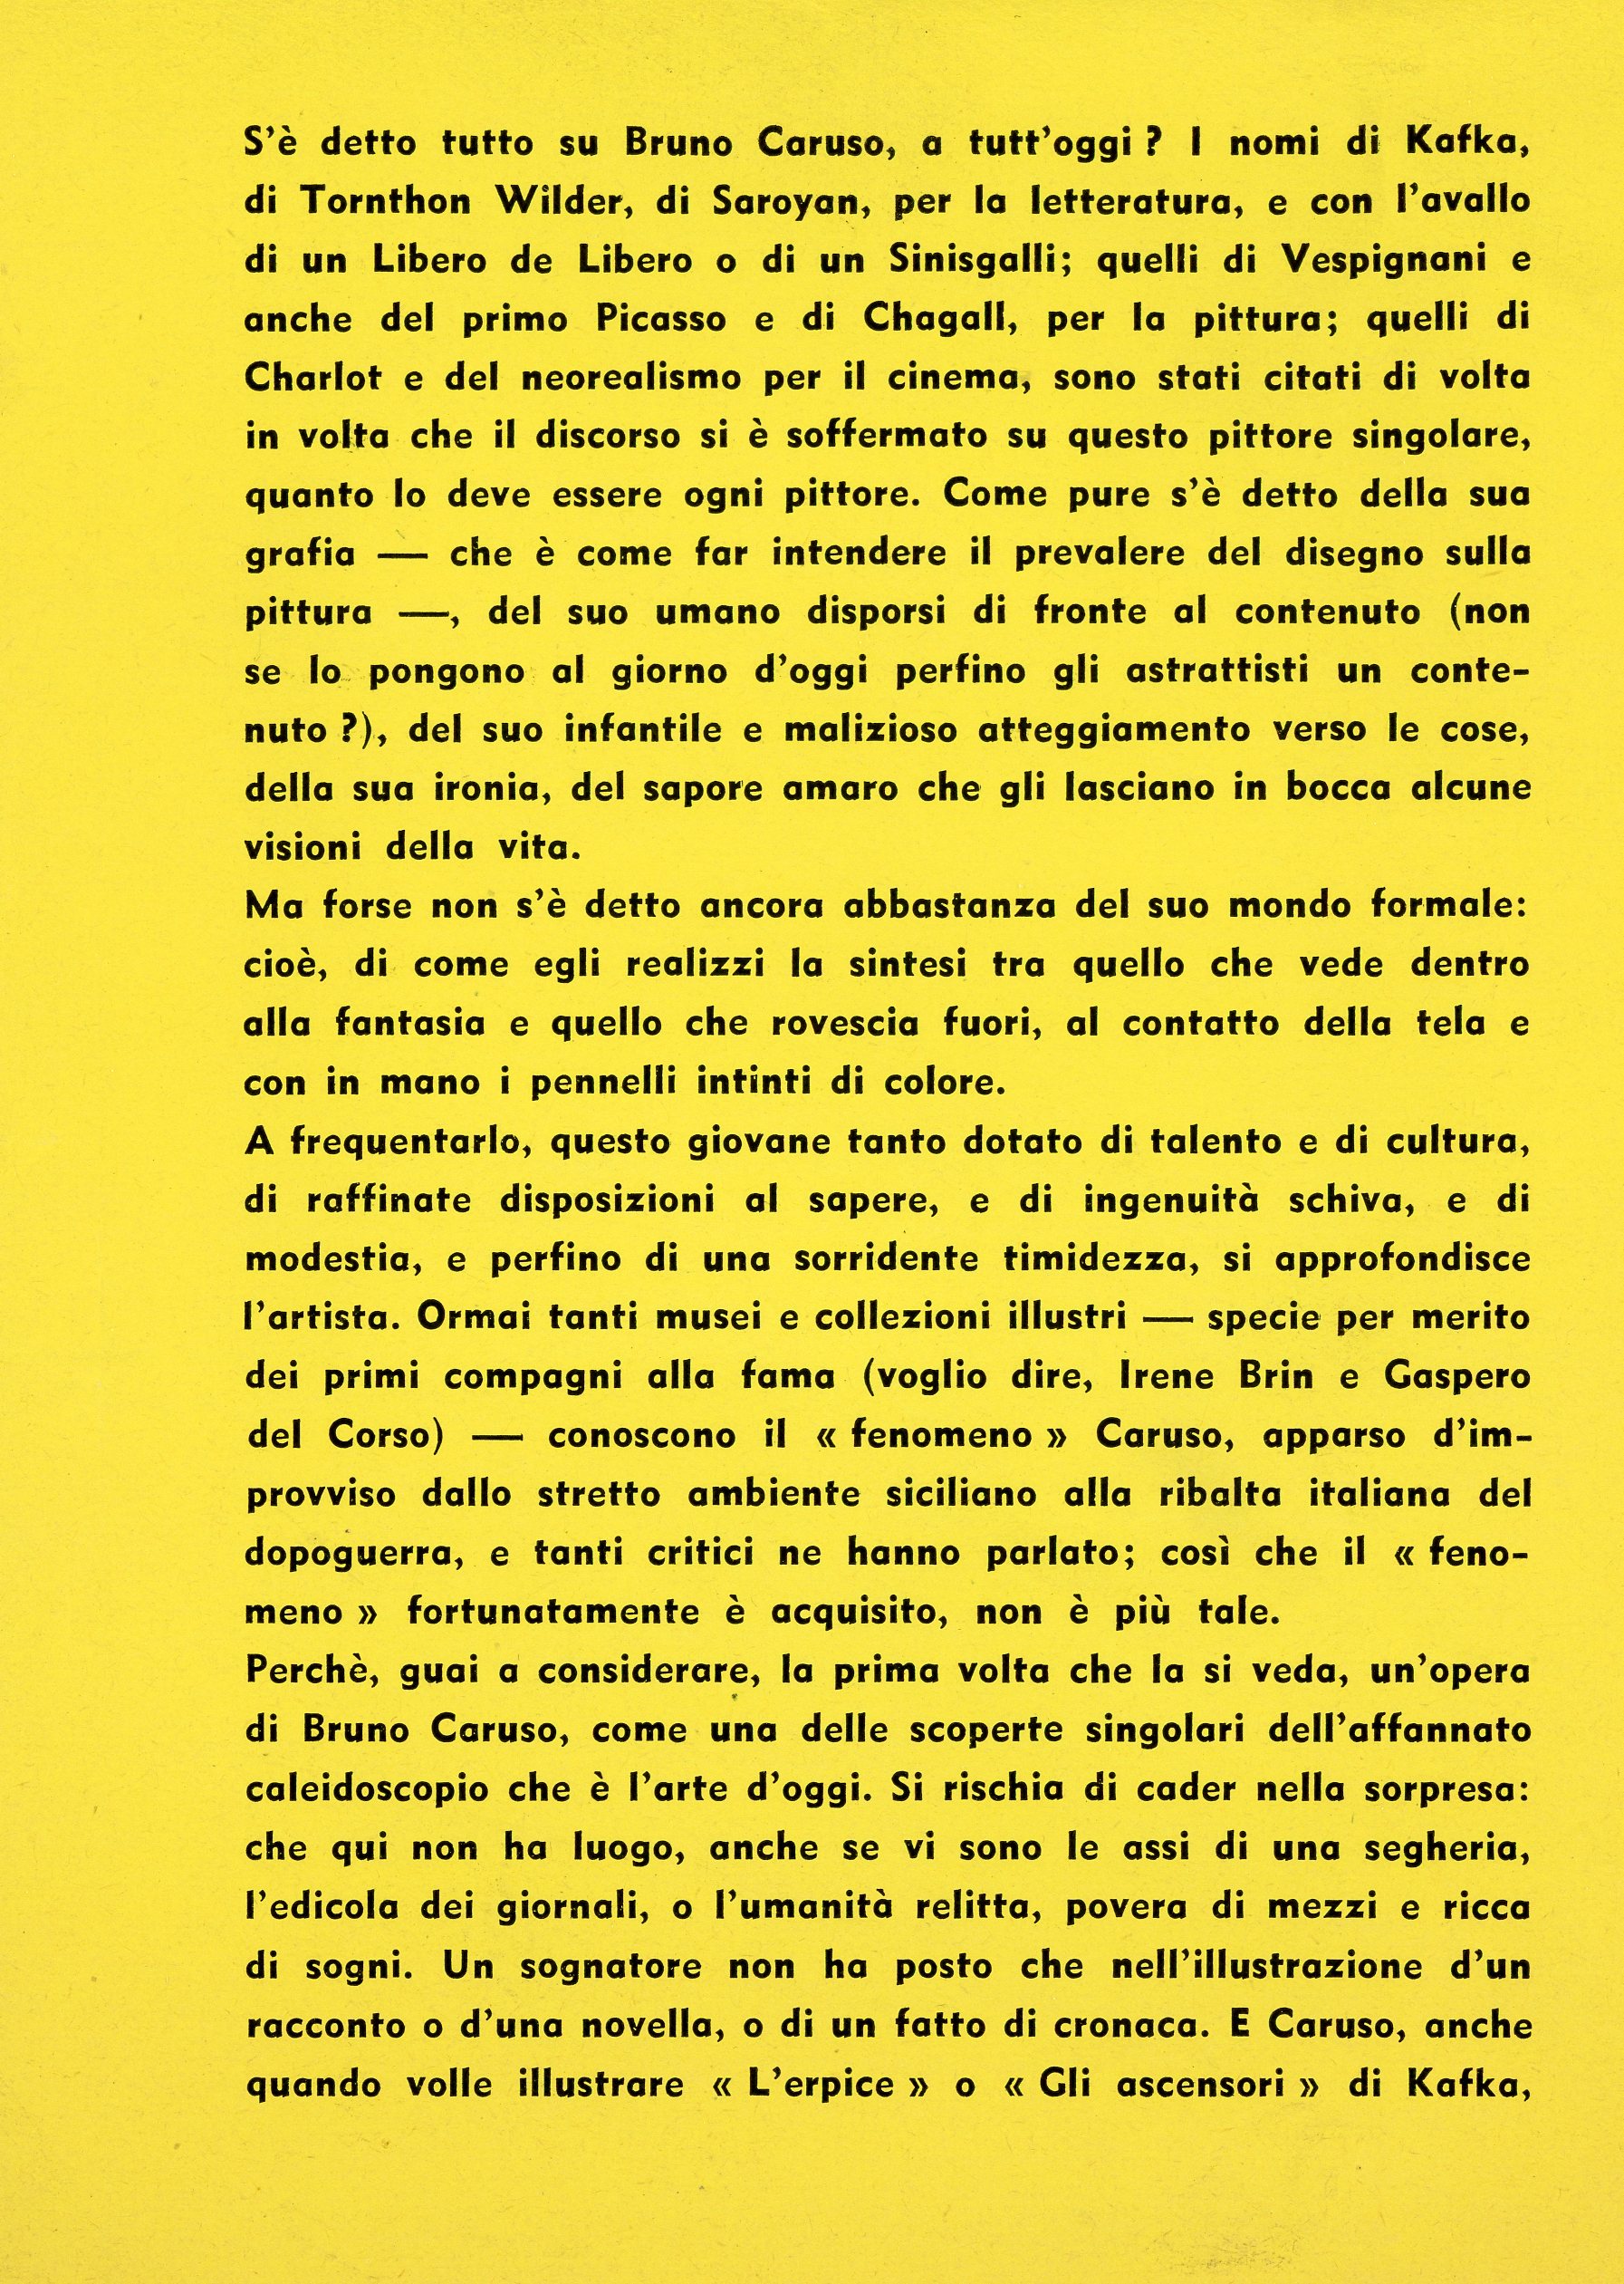 1957-06 Galleria del Cavallino - Bruno Caruso_02.jpg